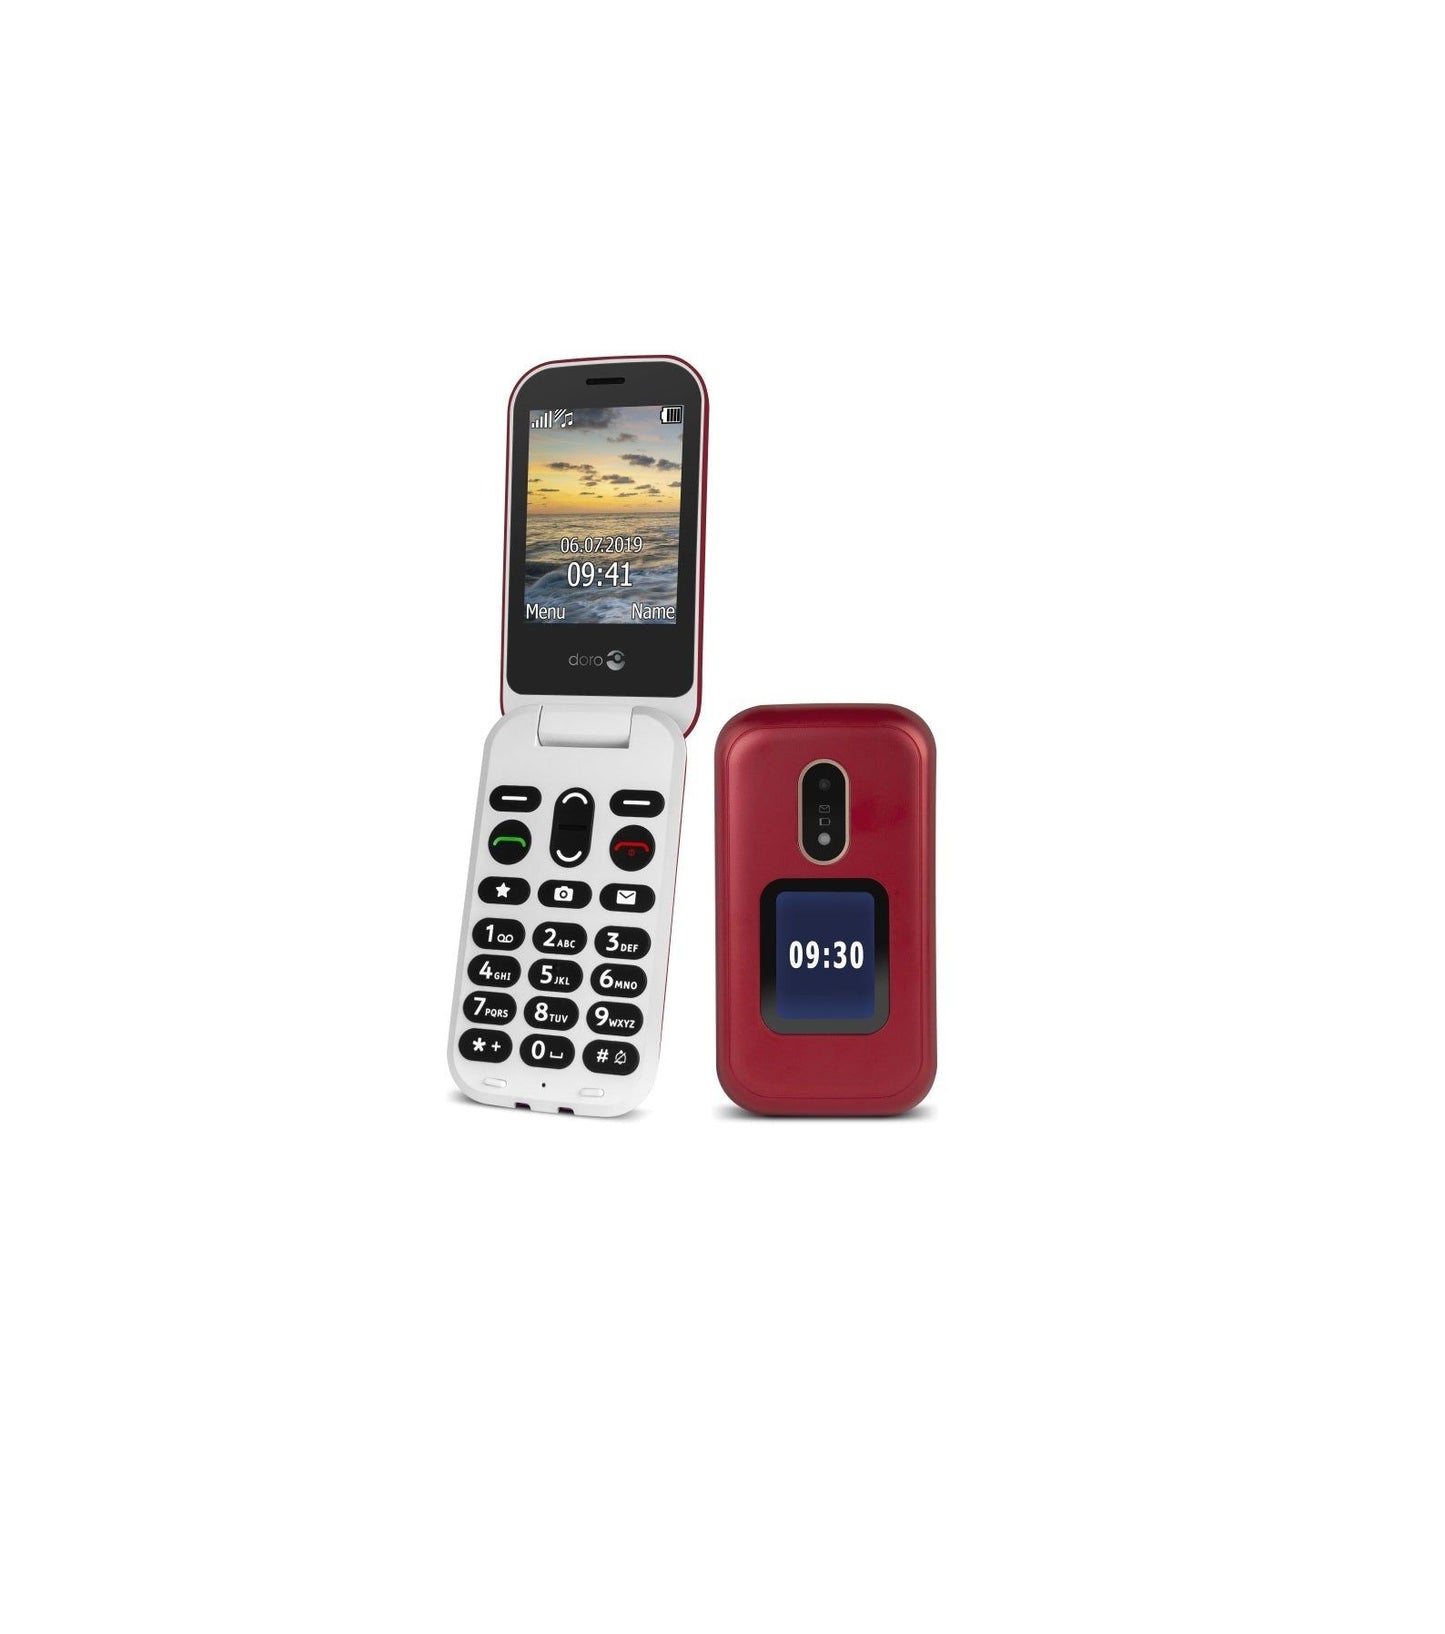 Doro Mobiele Klaptelefoon 6060 2G Senioren GSM Kopen van  Doro?- Vanaf €88.95 bij Pucshop.nl